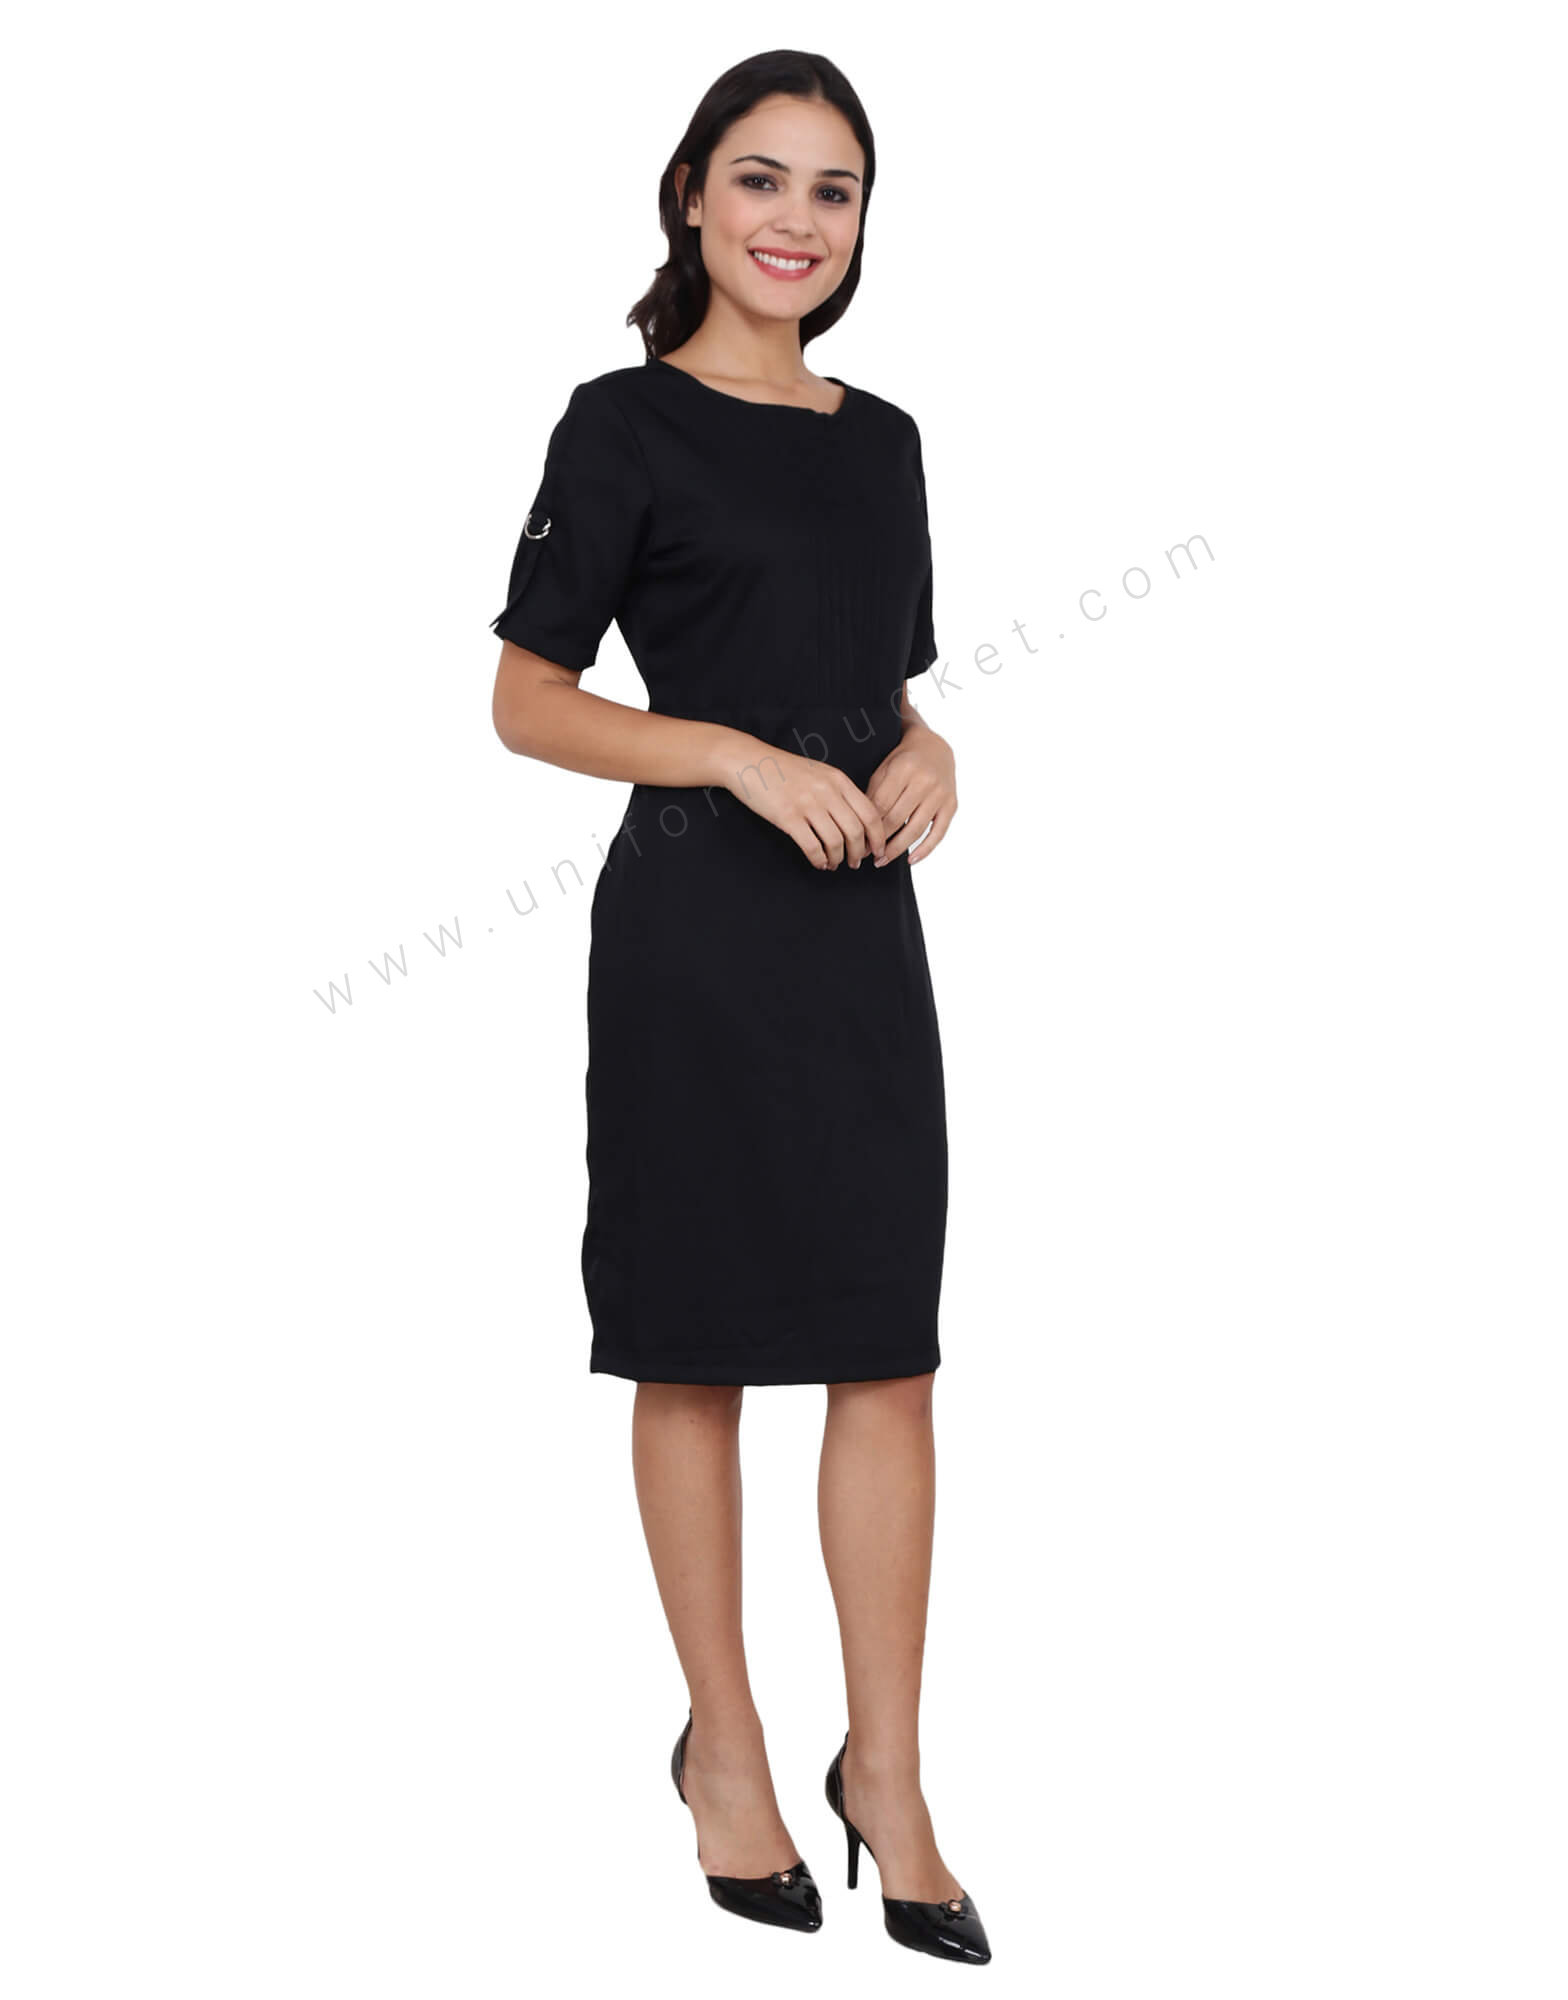 Modest Black Formal Dresses Long Sleeves Tea Length | Long black dress  formal, Long sleeve dress formal, Modest formal dresses